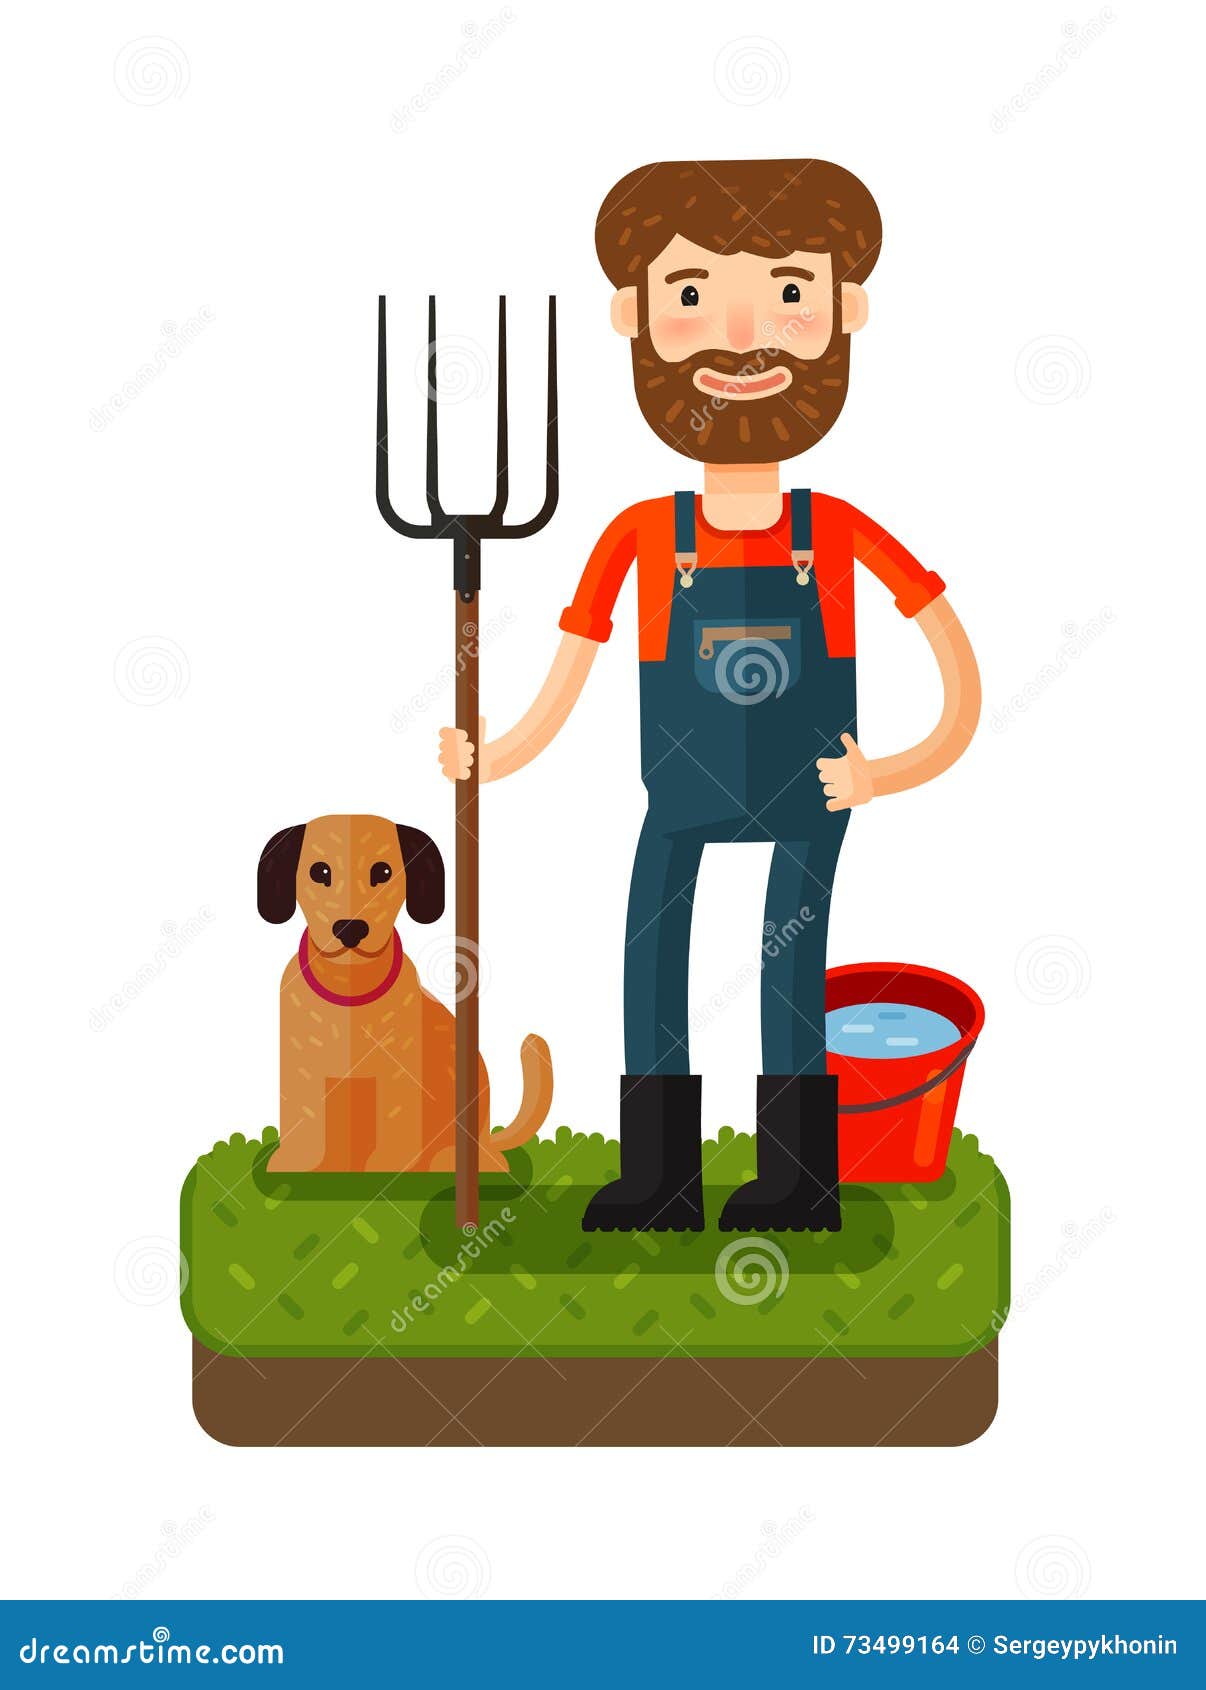 farmer and dog clip art